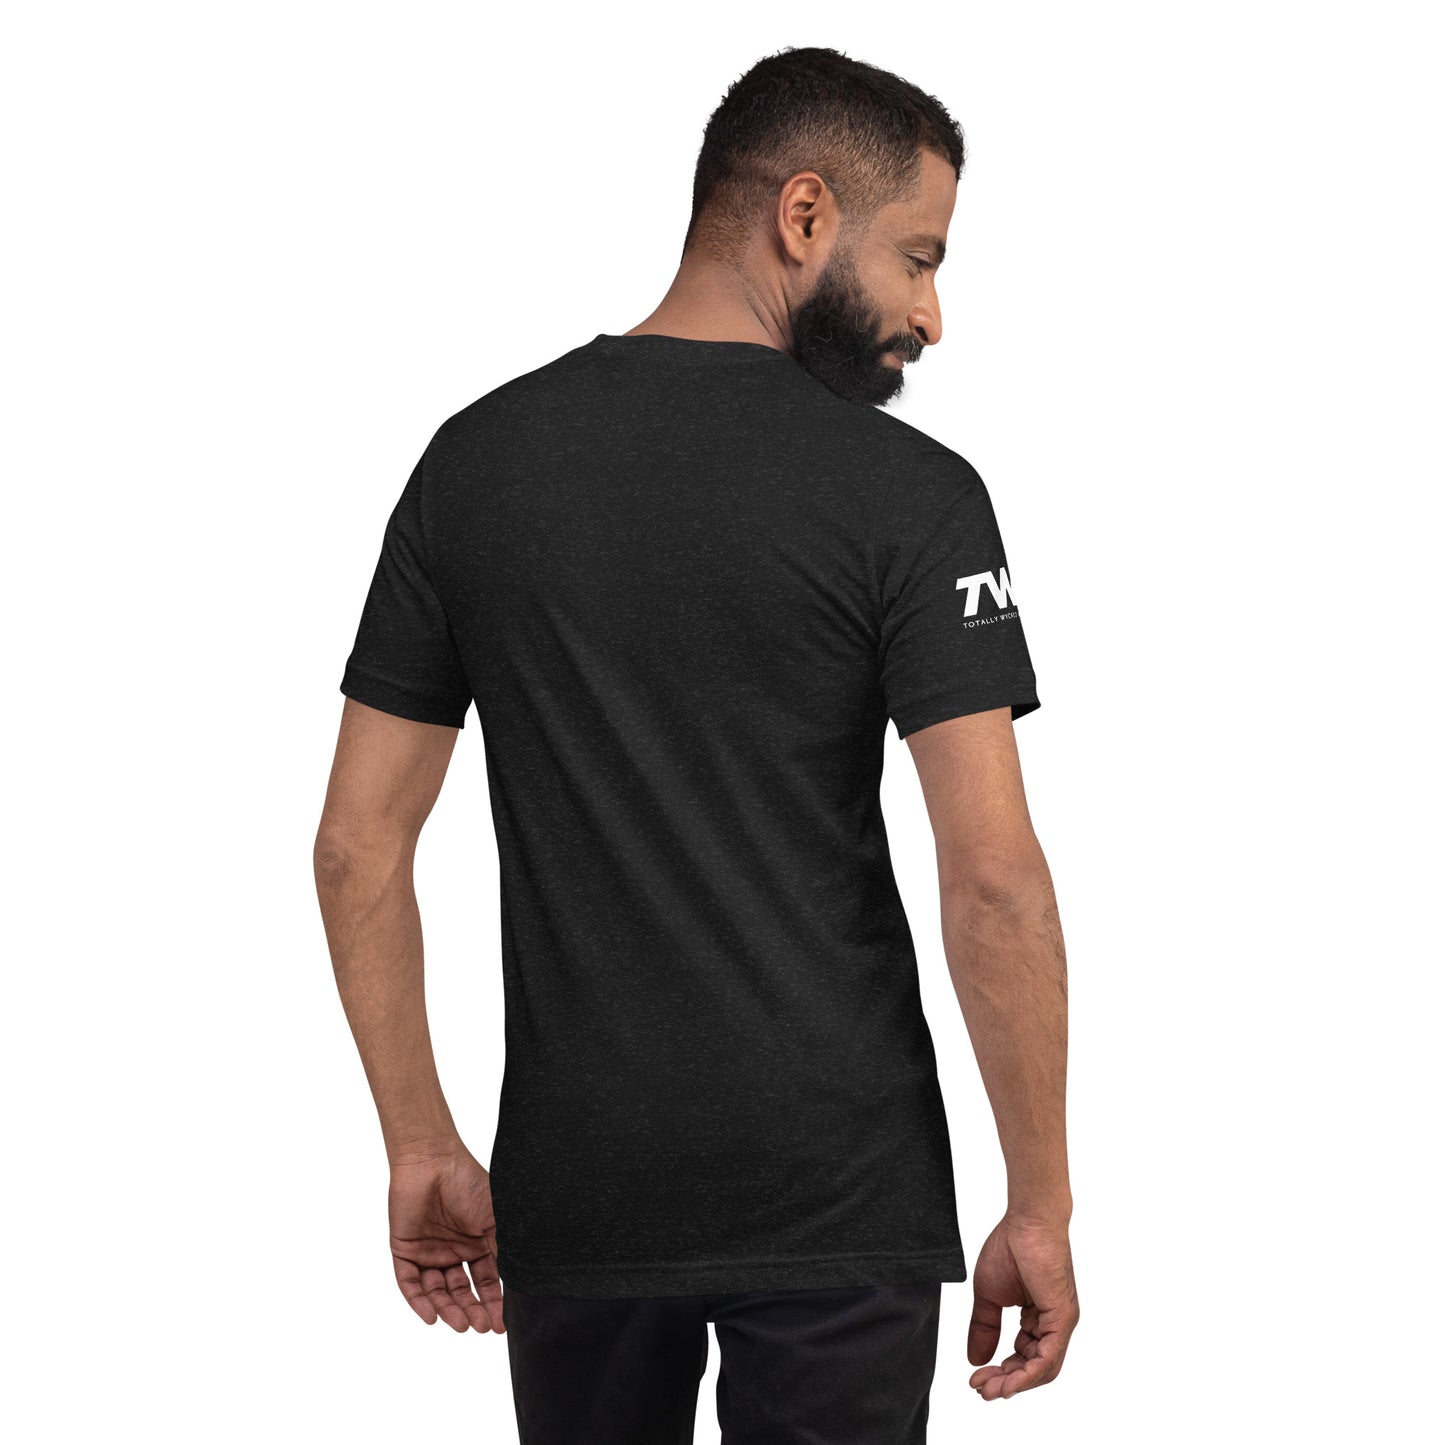 TWA Krytical Mass T-Shirt